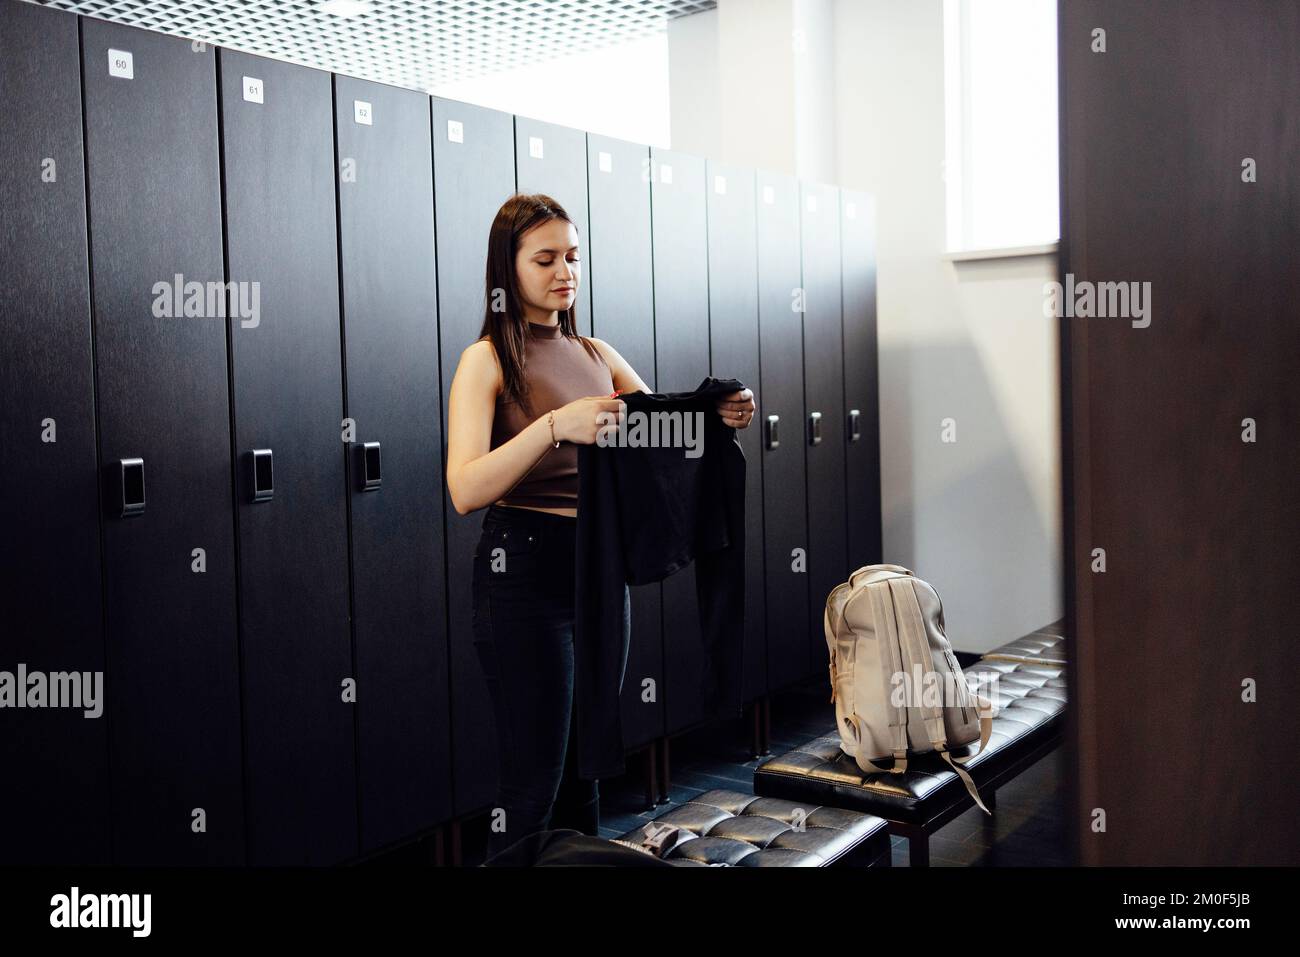 Wunderschön sitzende junge brünette Frau mit Sportkleidung in der Umkleidekabine des Fitnessstudios, die sich auf das Training vorbereitet Stockfoto